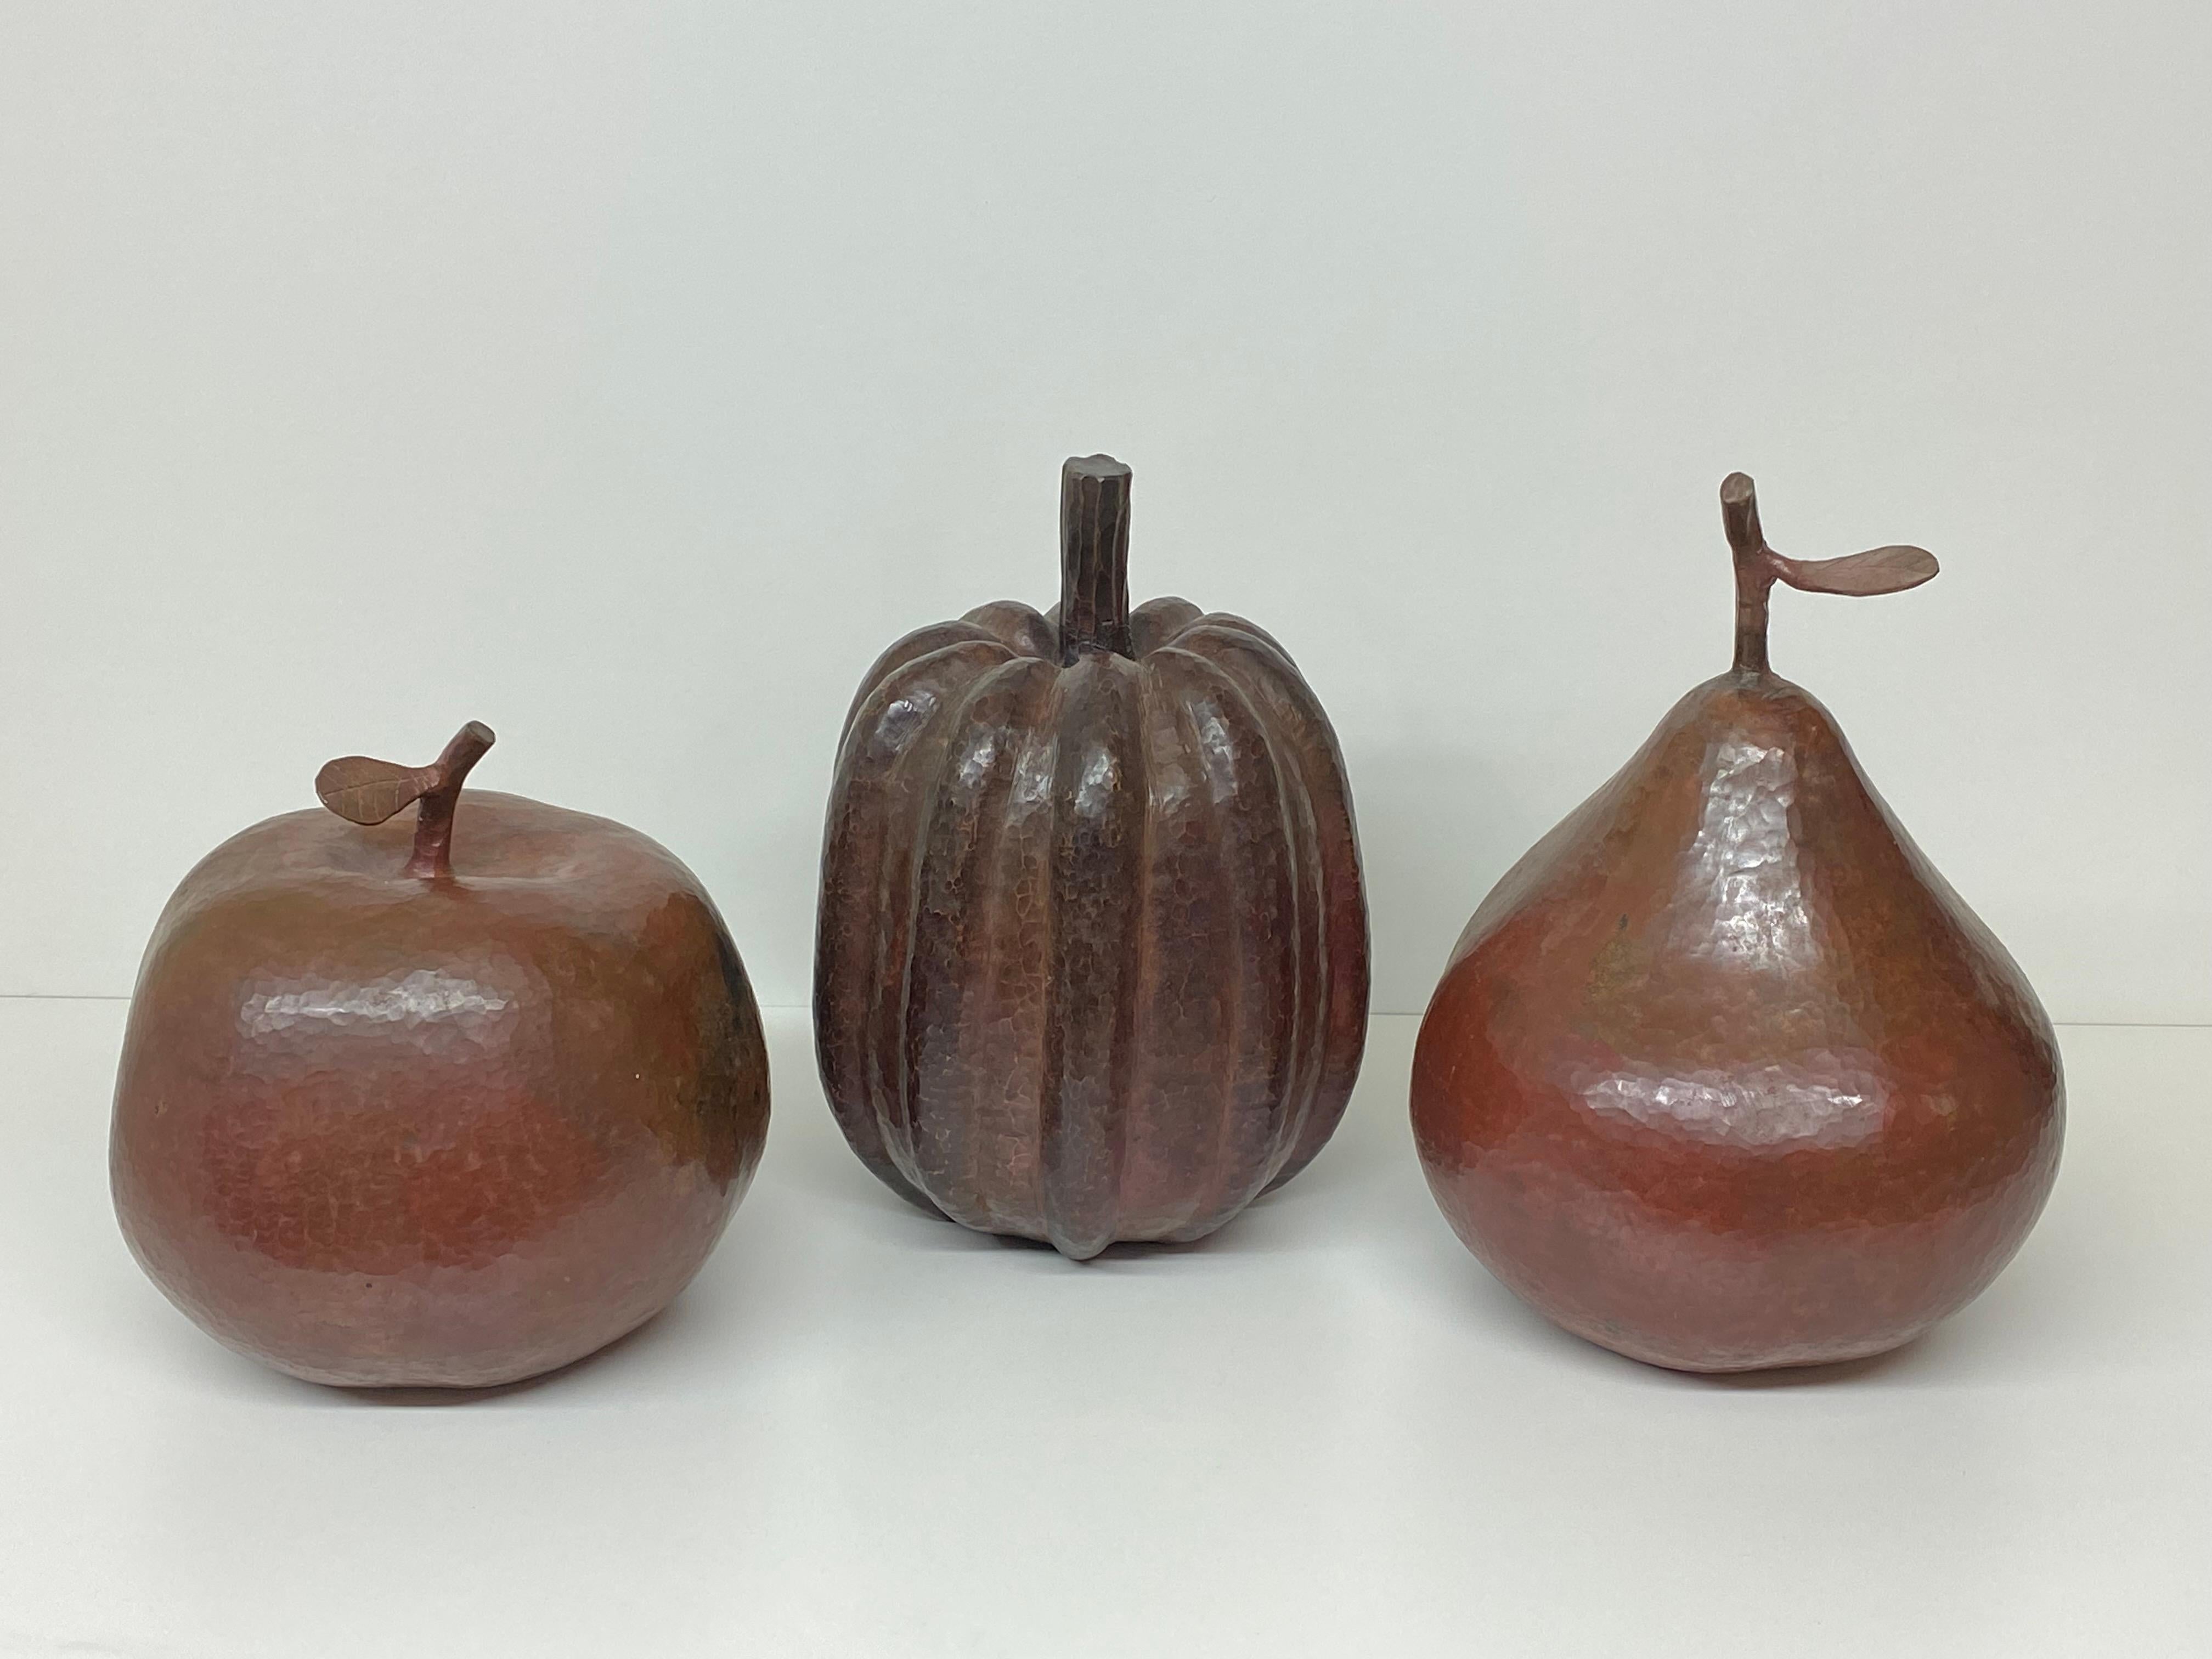 Set aus drei dekorativen Apfel-, Birnen- und Kürbisskulpturen aus gehämmertem Kupfer im Stil von Robert Kuo. Der Apfel ist 8